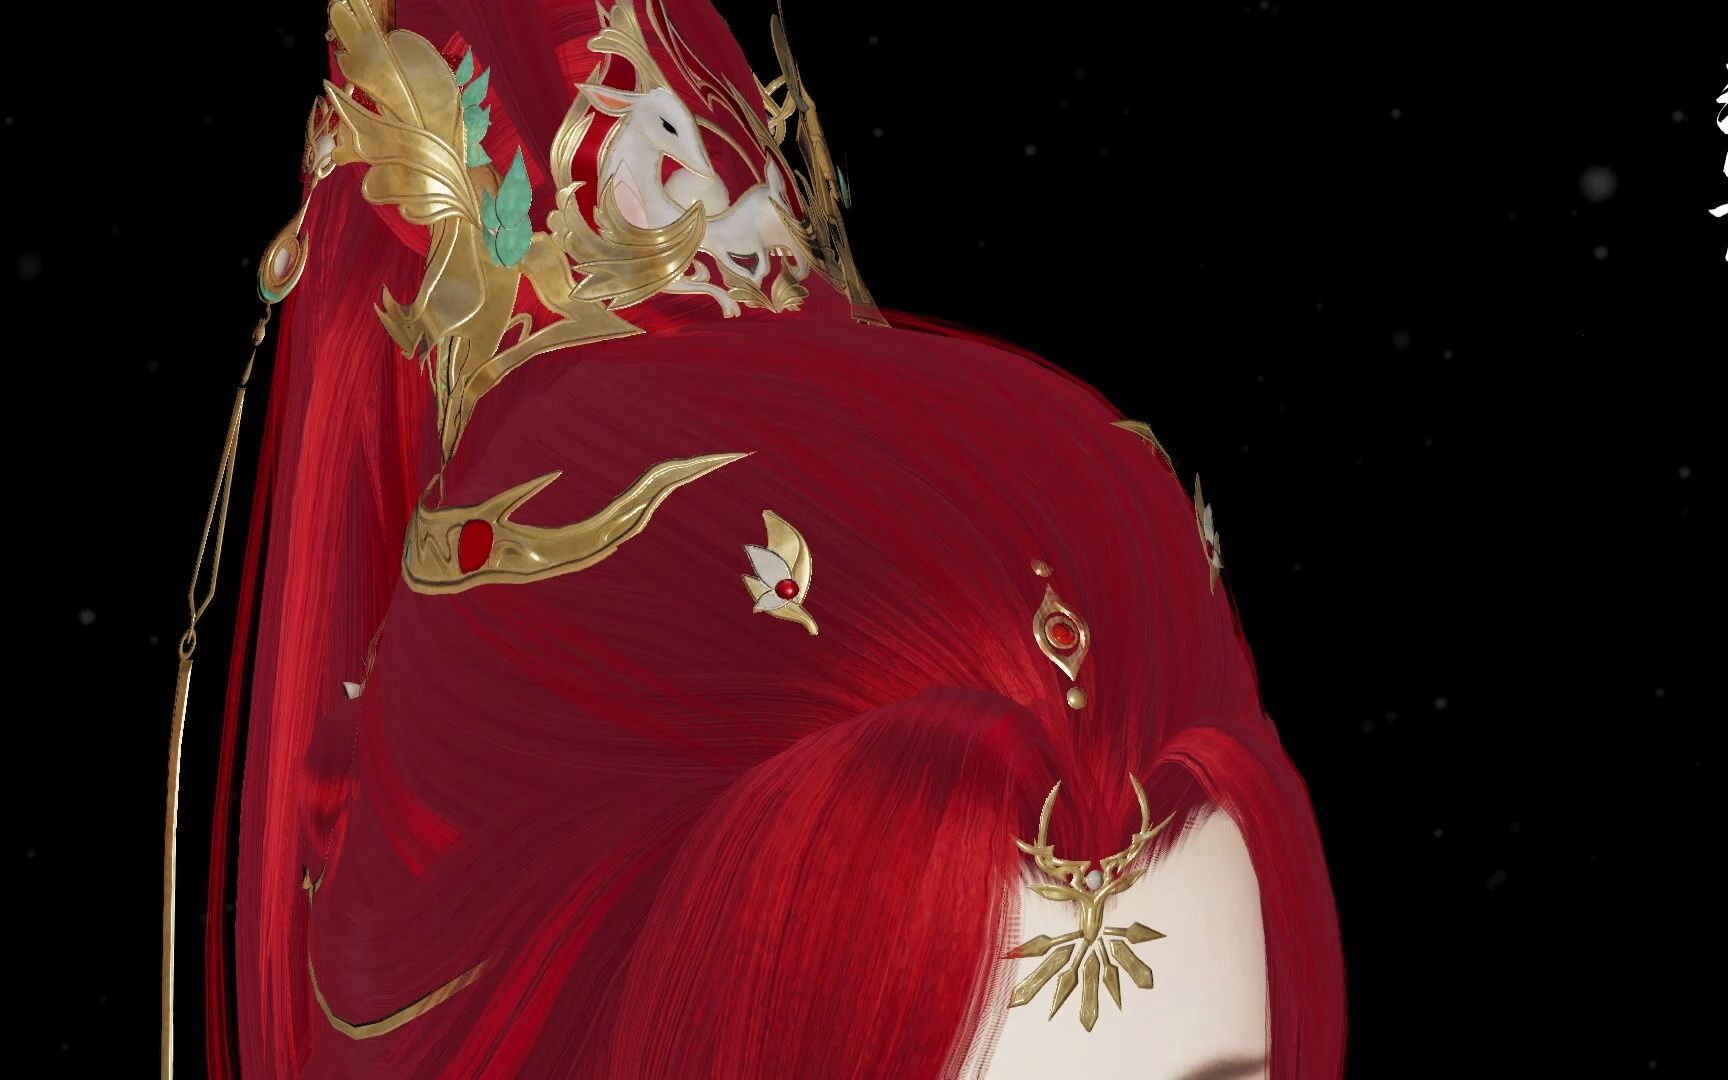 【剑网三】十二红 王红 全体型高清视频欣赏 我觉得是最正常的头发